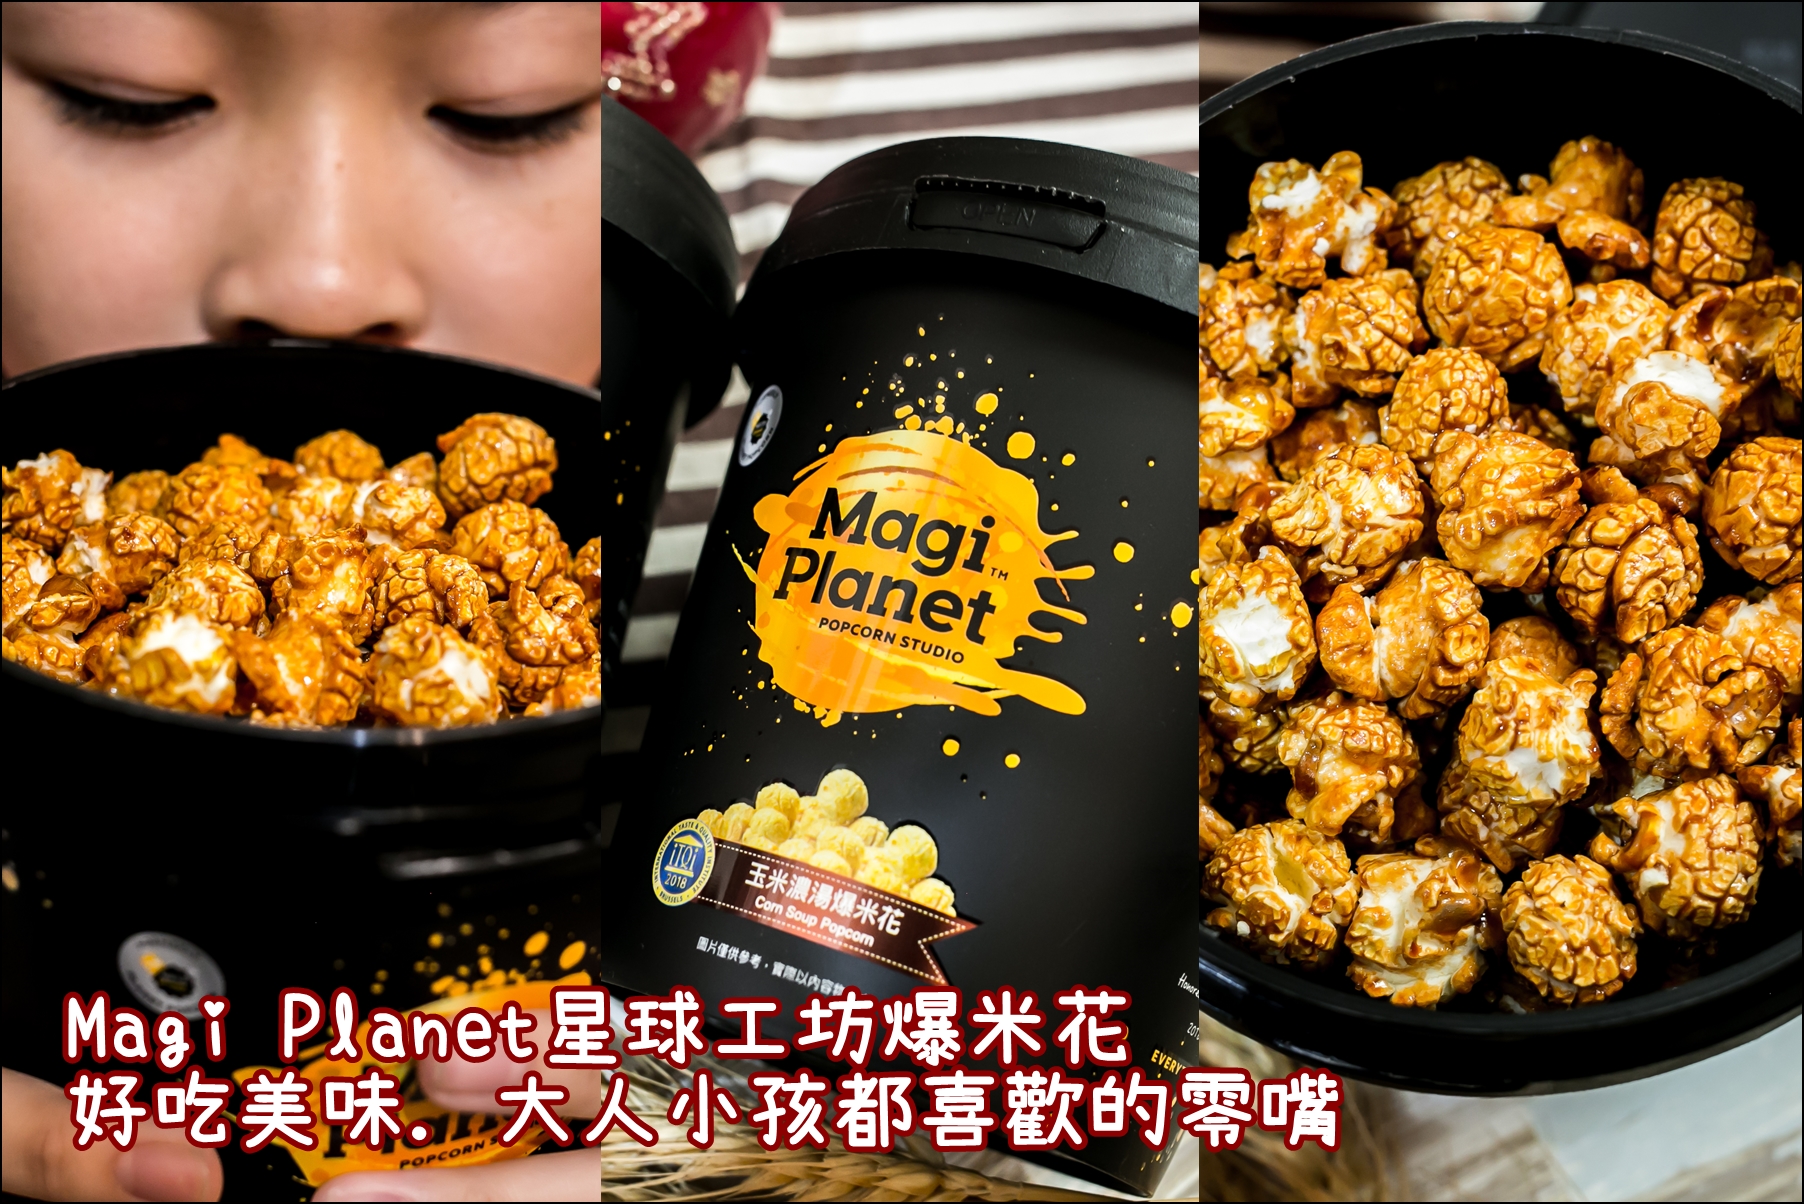 台灣爆米花．超商過年限定發售．Magi Planet 星球工坊爆米花．香甜的蔗香焦糖&濃郁玉米濃湯一吃就上癮。